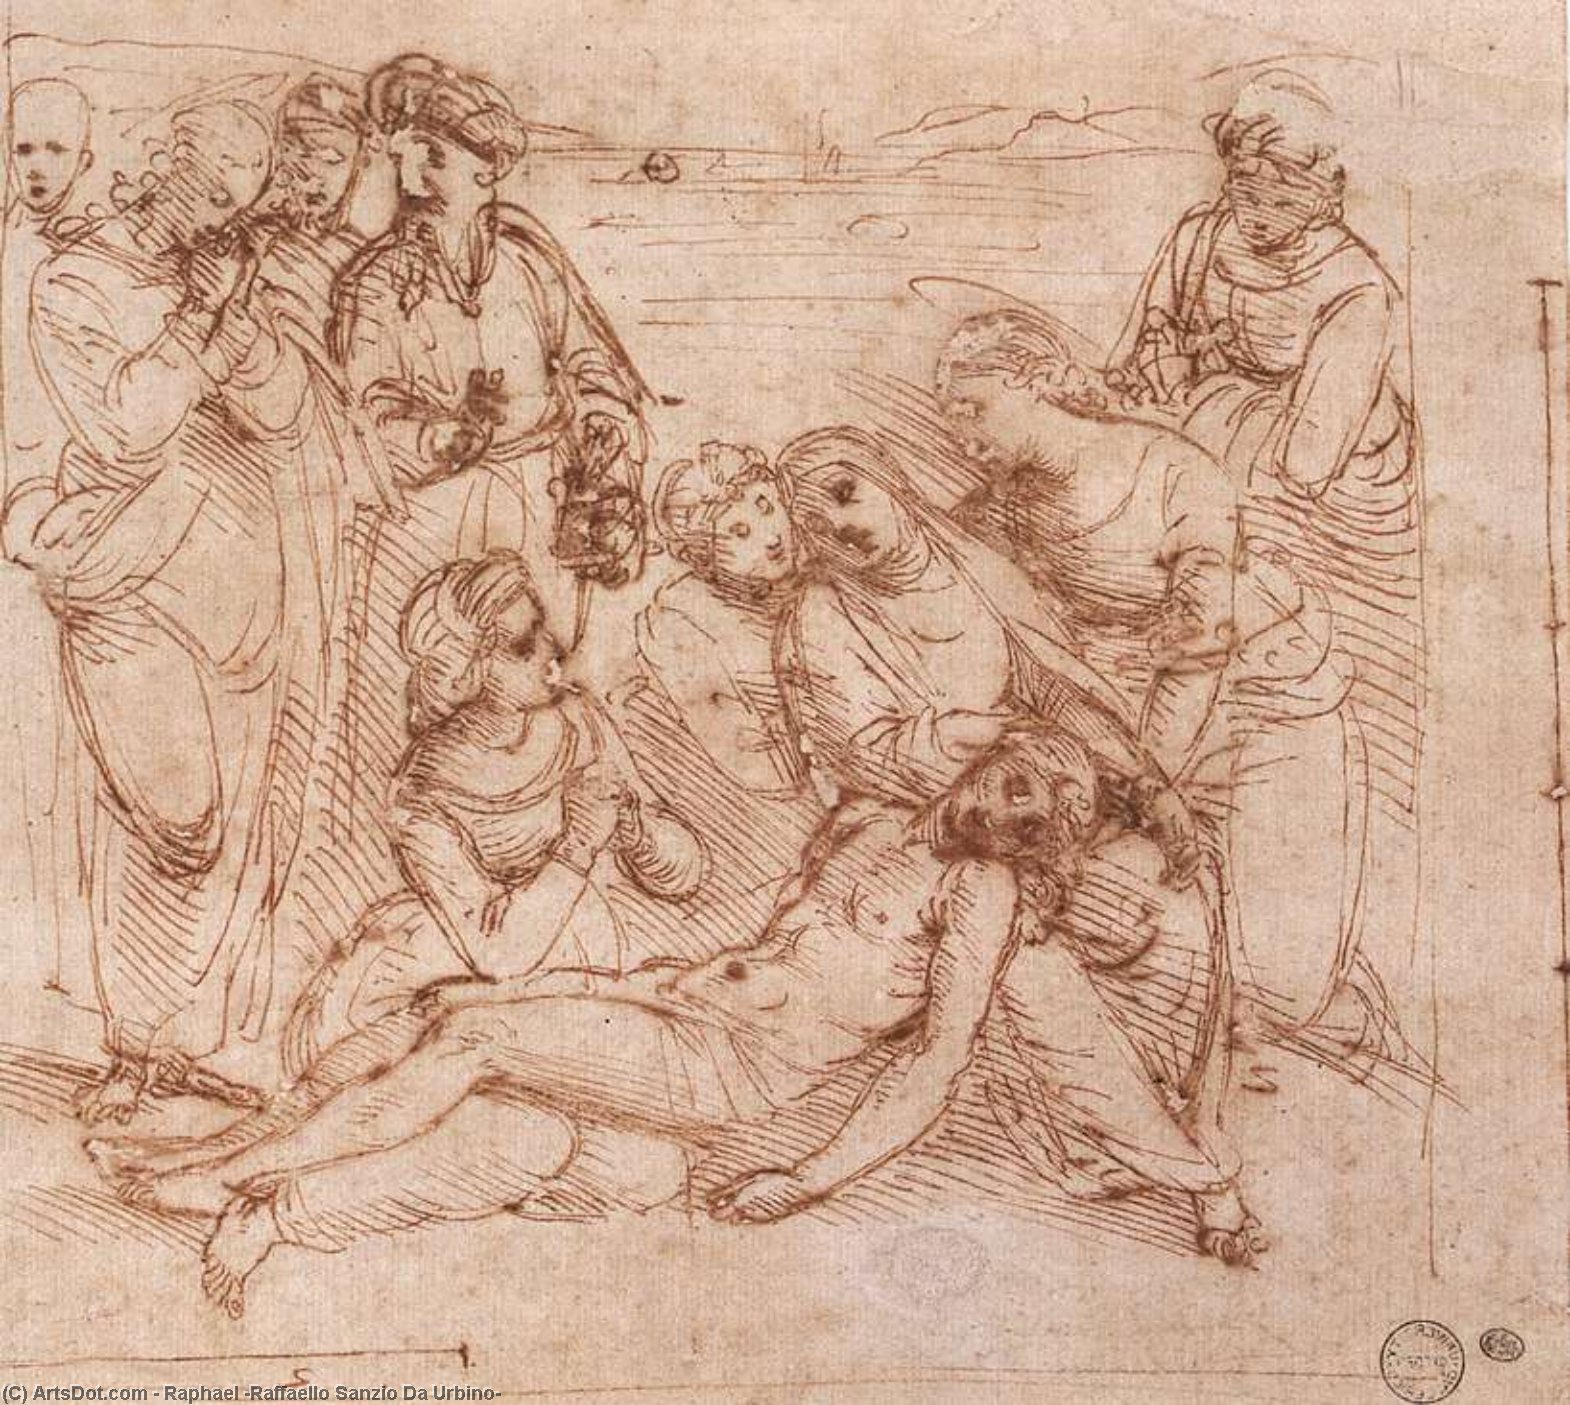 WikiOO.org - Encyclopedia of Fine Arts - Maleri, Artwork Raphael (Raffaello Sanzio Da Urbino) - Lamentation over the Dead Christ